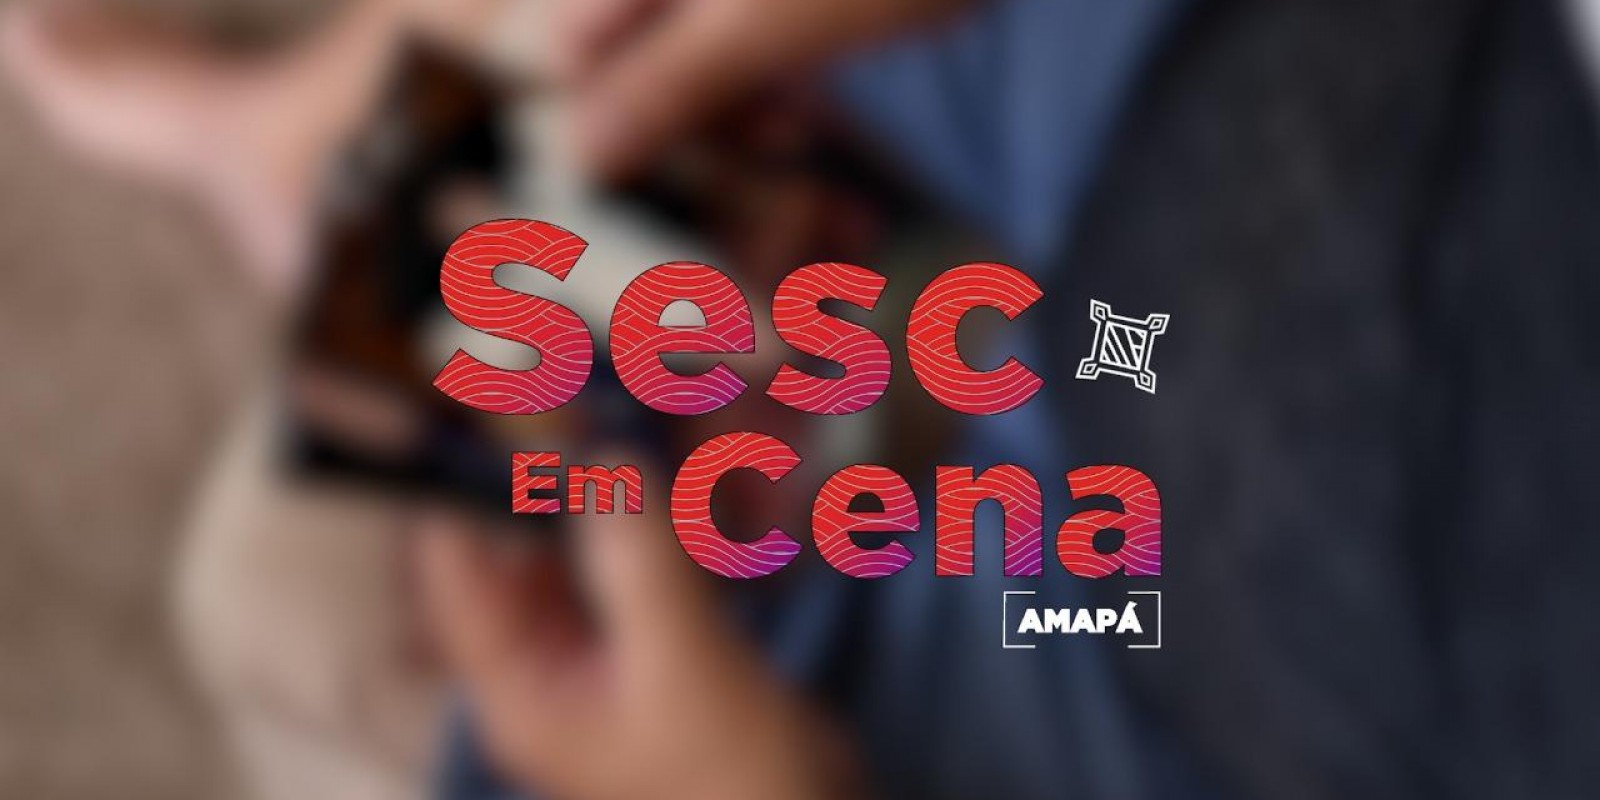 Sesc em Cena Amapá: personalidades das artes cênicas falam de suas trajetórias com o projeto